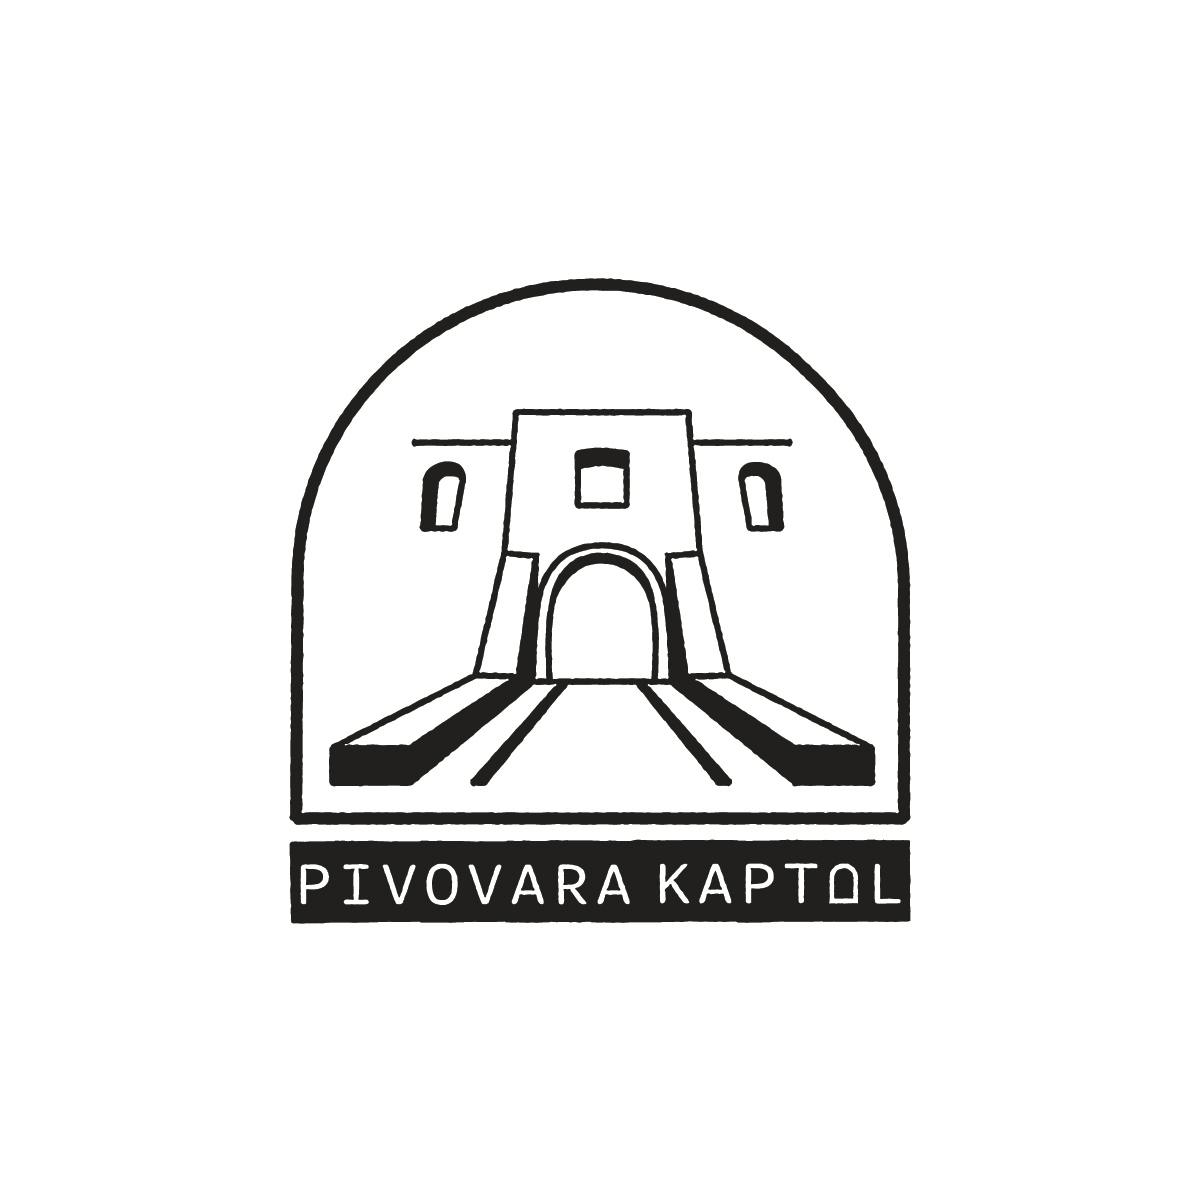 Craft pivo iz srca Slavonije — Pivovara Kaptol